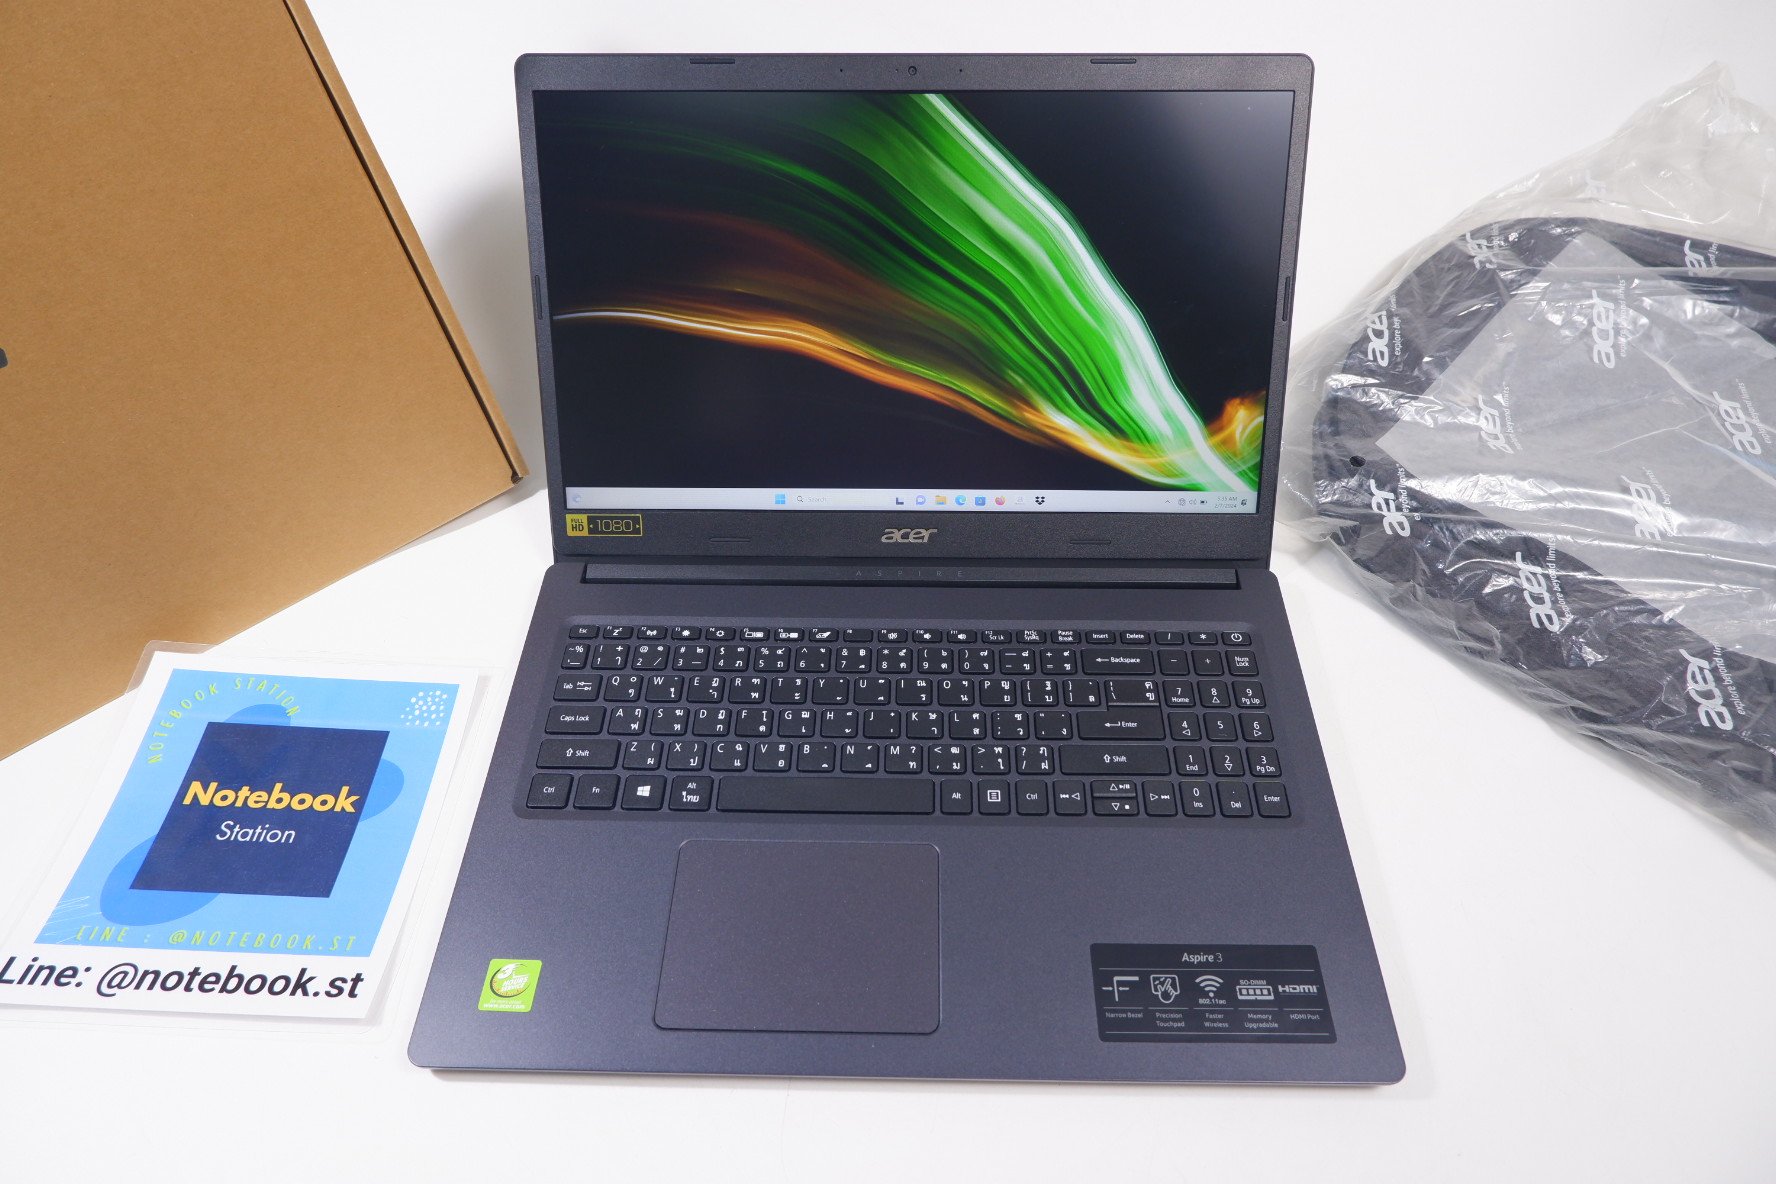 (ของใหม่)Acer Aspire3 Ram4 หน้าจอ15.6 FHD IPS จอใหญ่ภาพคมชัด อุปกรณ์ครบกล่อง เครื่องพร้อมใช้งาน ขายถูกเพียง 7,990 .-ฟรีกระเป๋าเป้